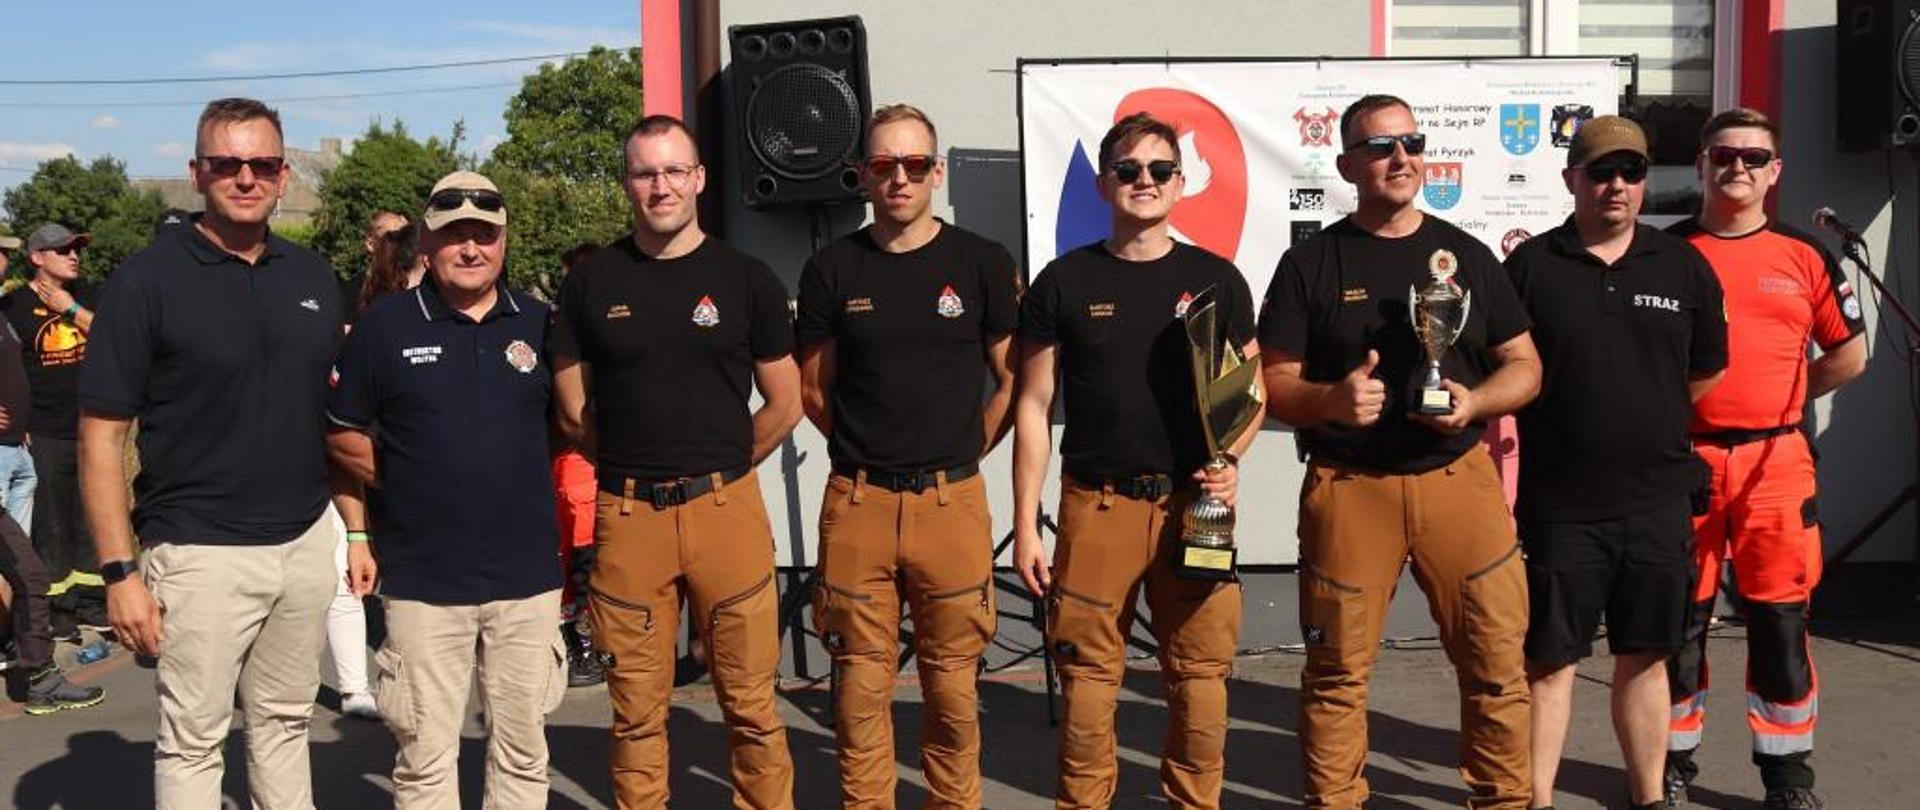 mistrzostwa w pierwszej pomocy, zdjęcie grupowe pleszewskich strażaków - medyków